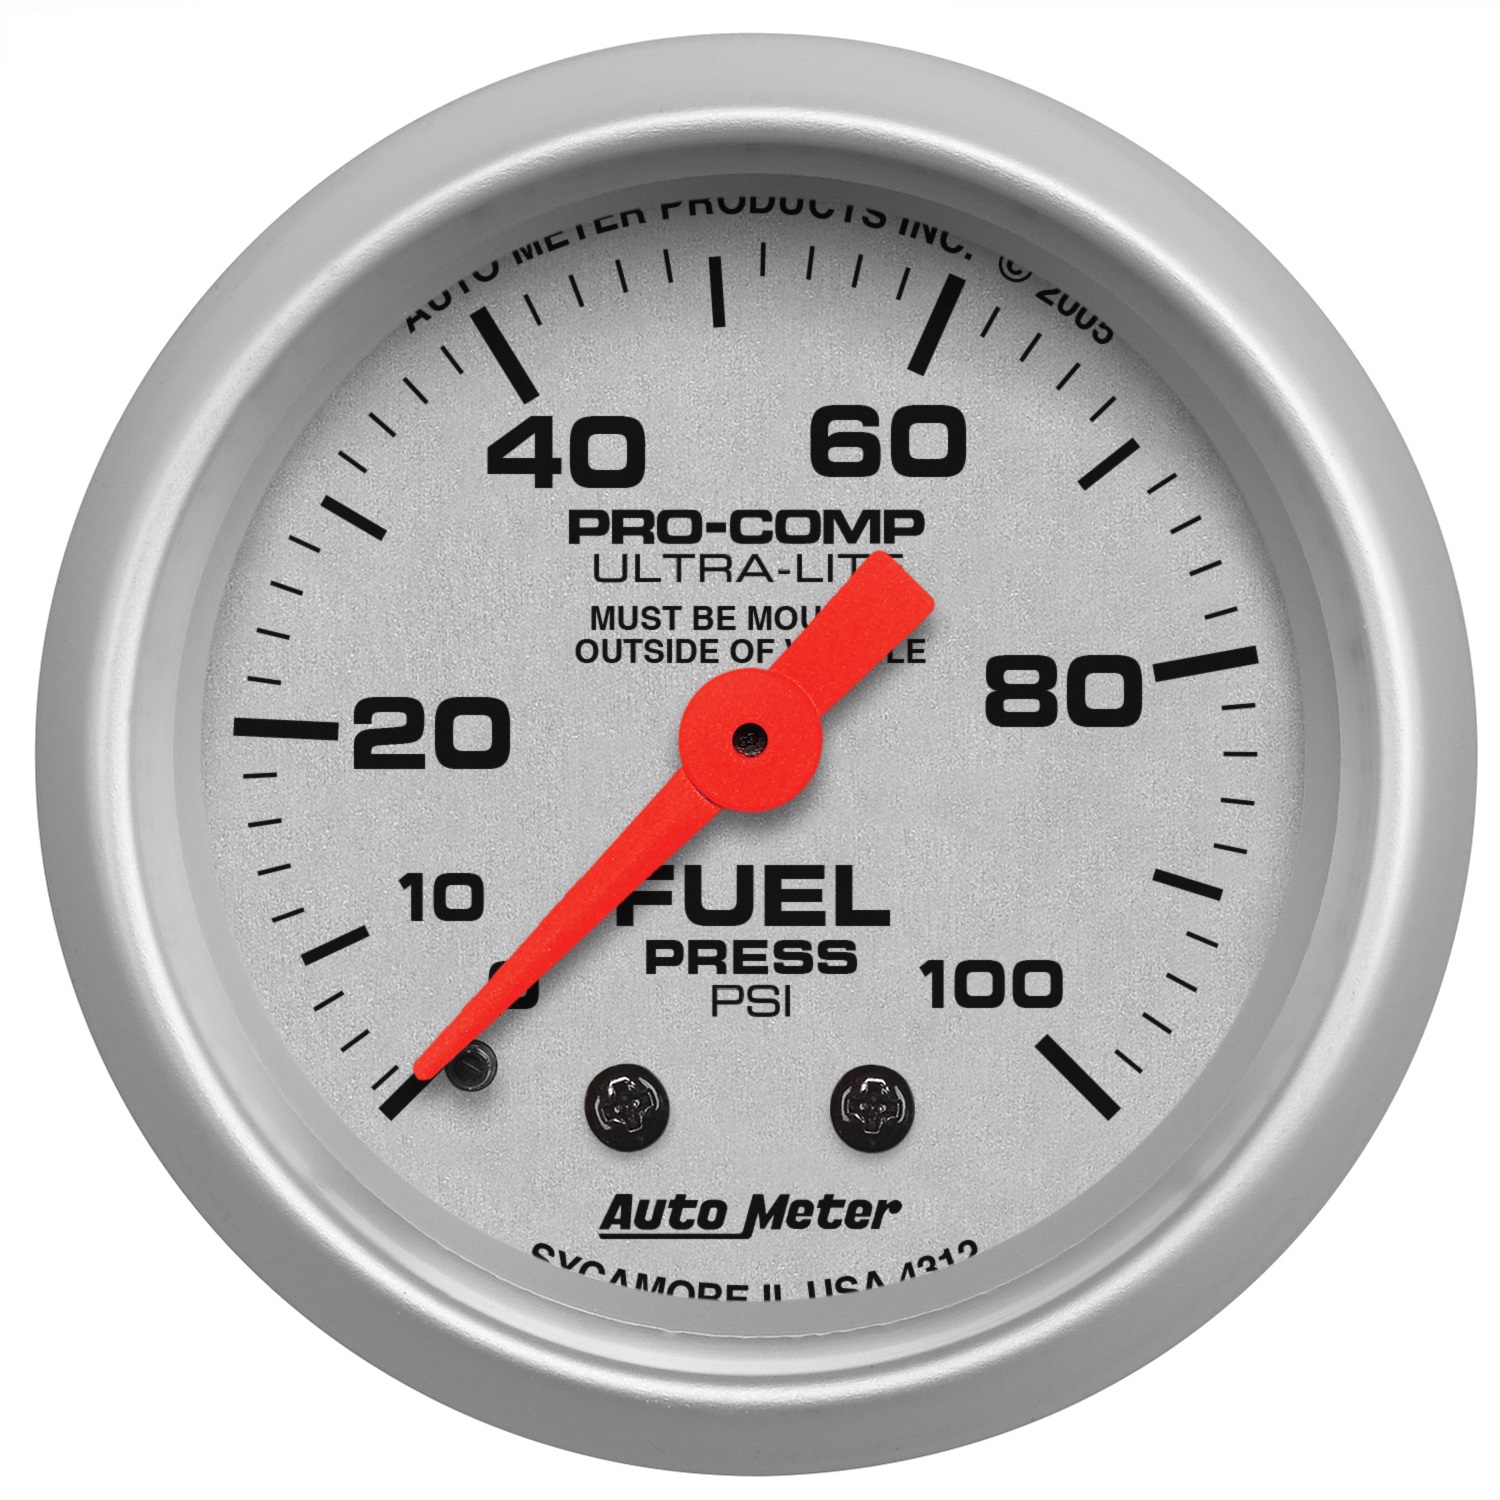 Auto Meter Auto Meter 4312 Ultra-Lite; Mechanical Fuel Pressure Gauge